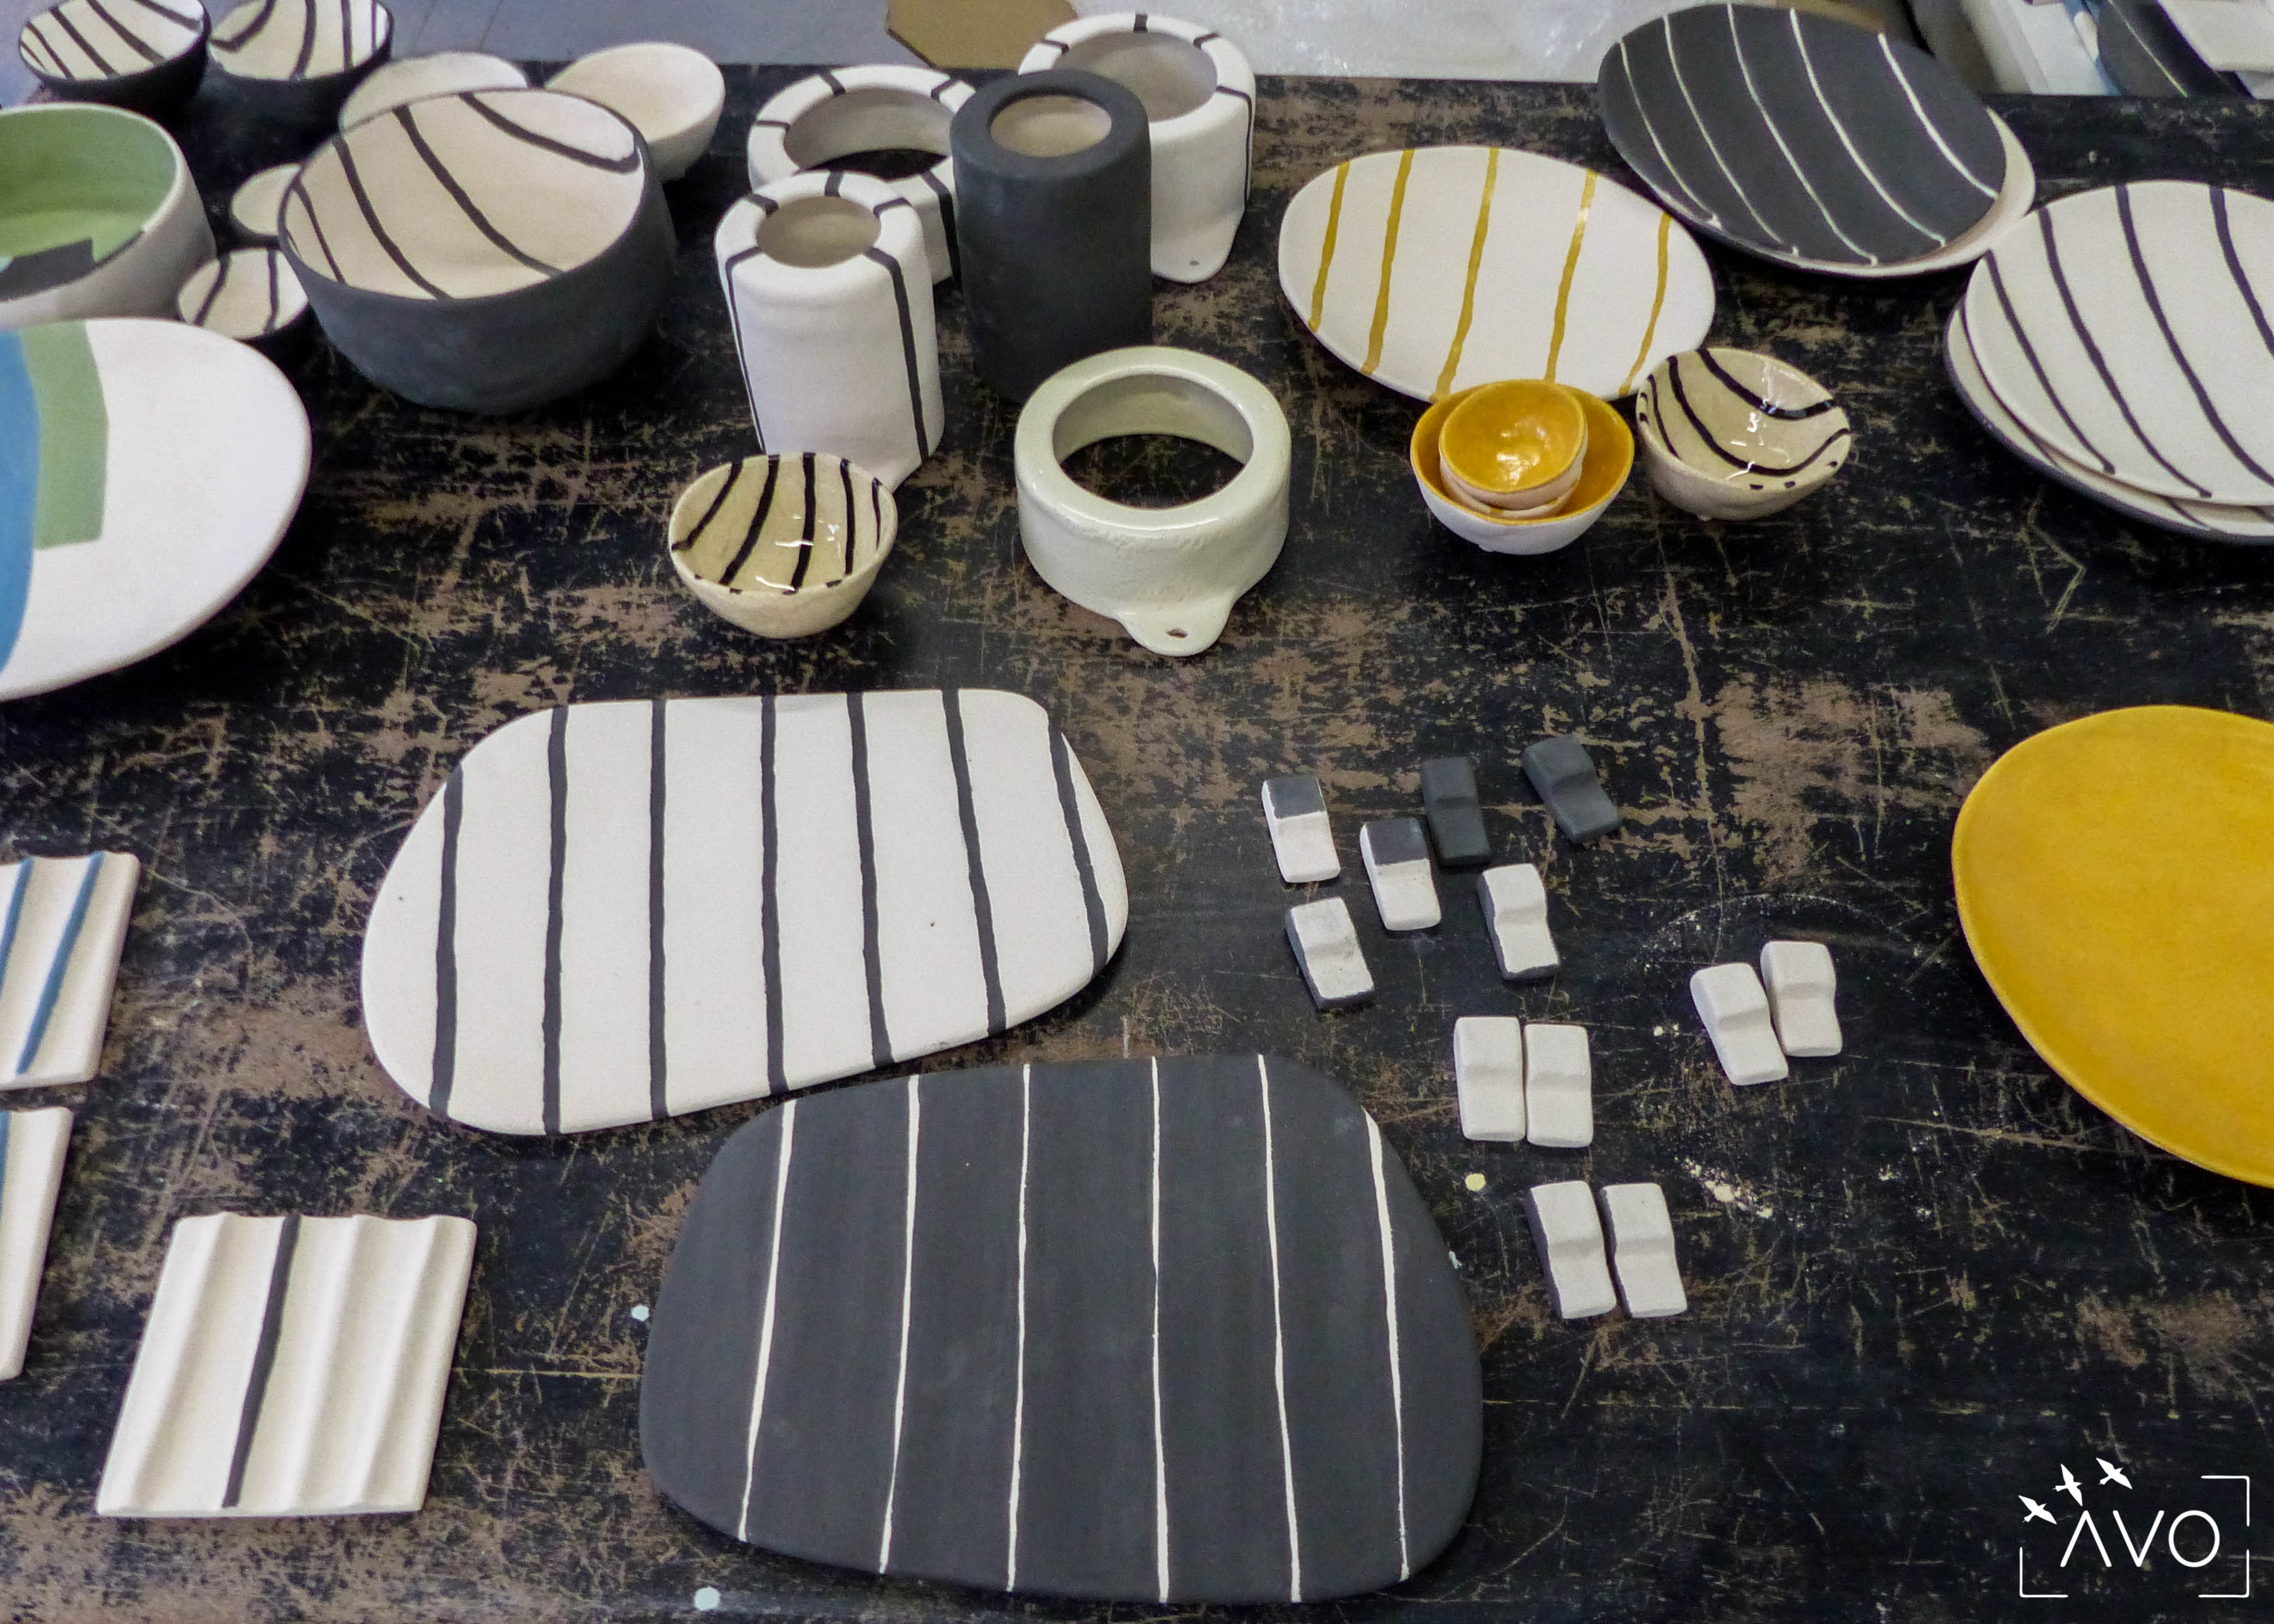 savoir-faire-ceramique-faience-decoration-bol-plat-creatrice-colore-email-terre-local-sabine-orlandini-atelier-plan-de-travail